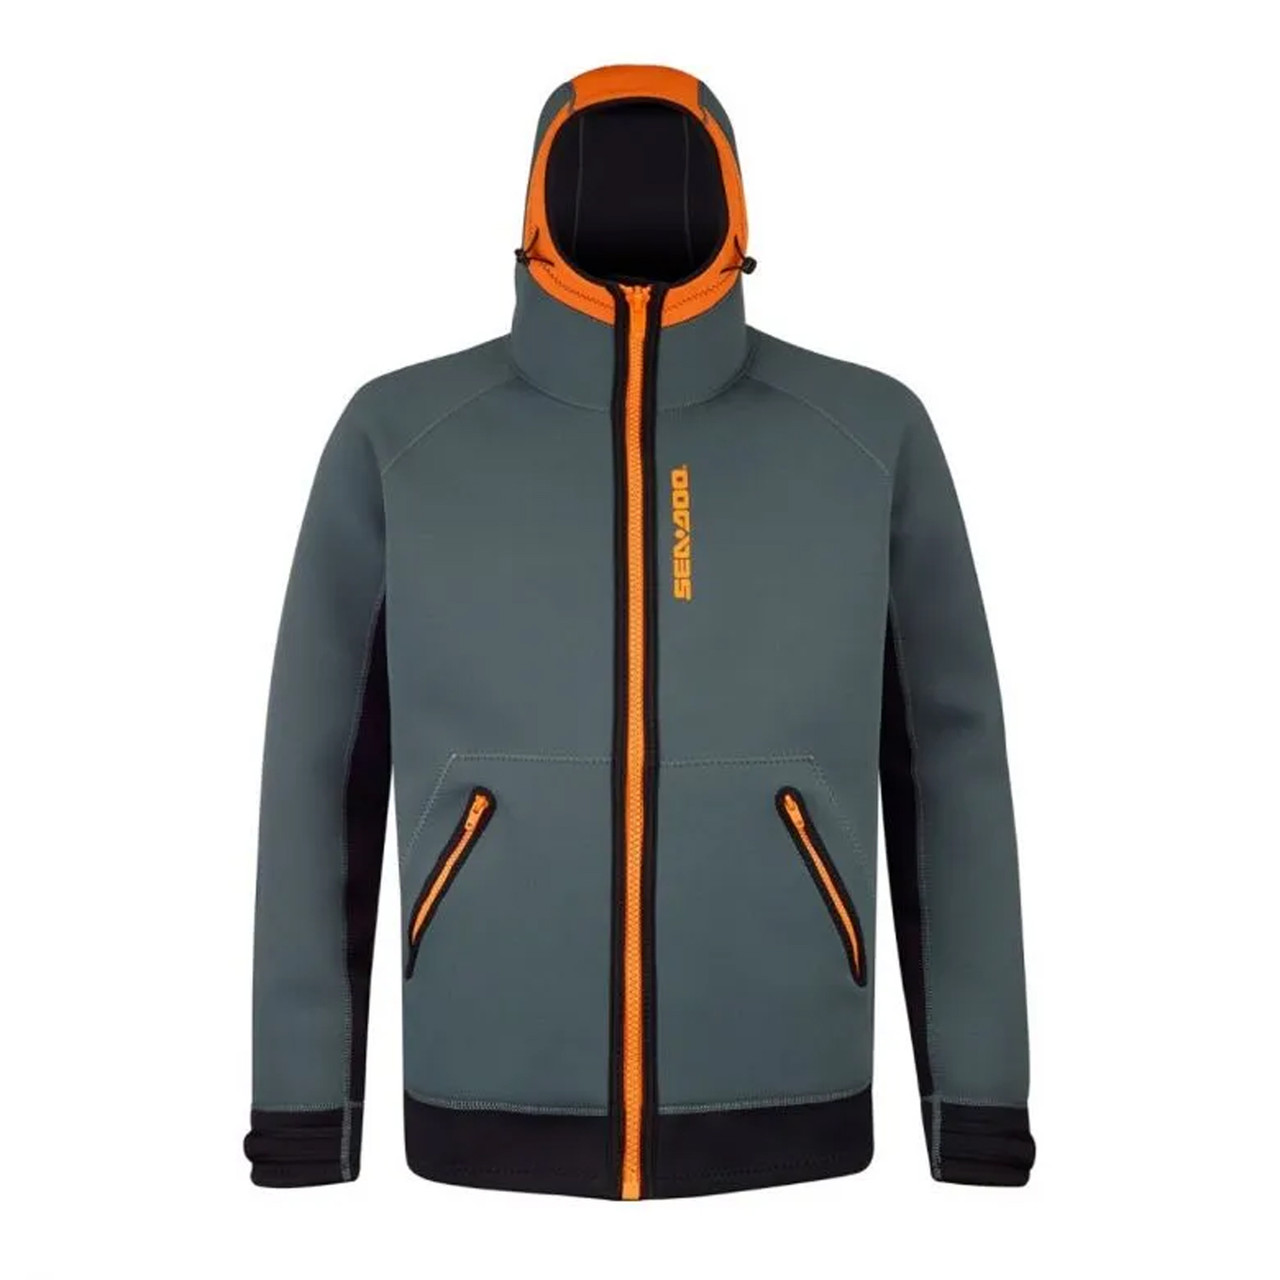 Sea-Doo New OEM, Branded Men's Orange Neoprene Nylon Riding Jacket, 2867871212